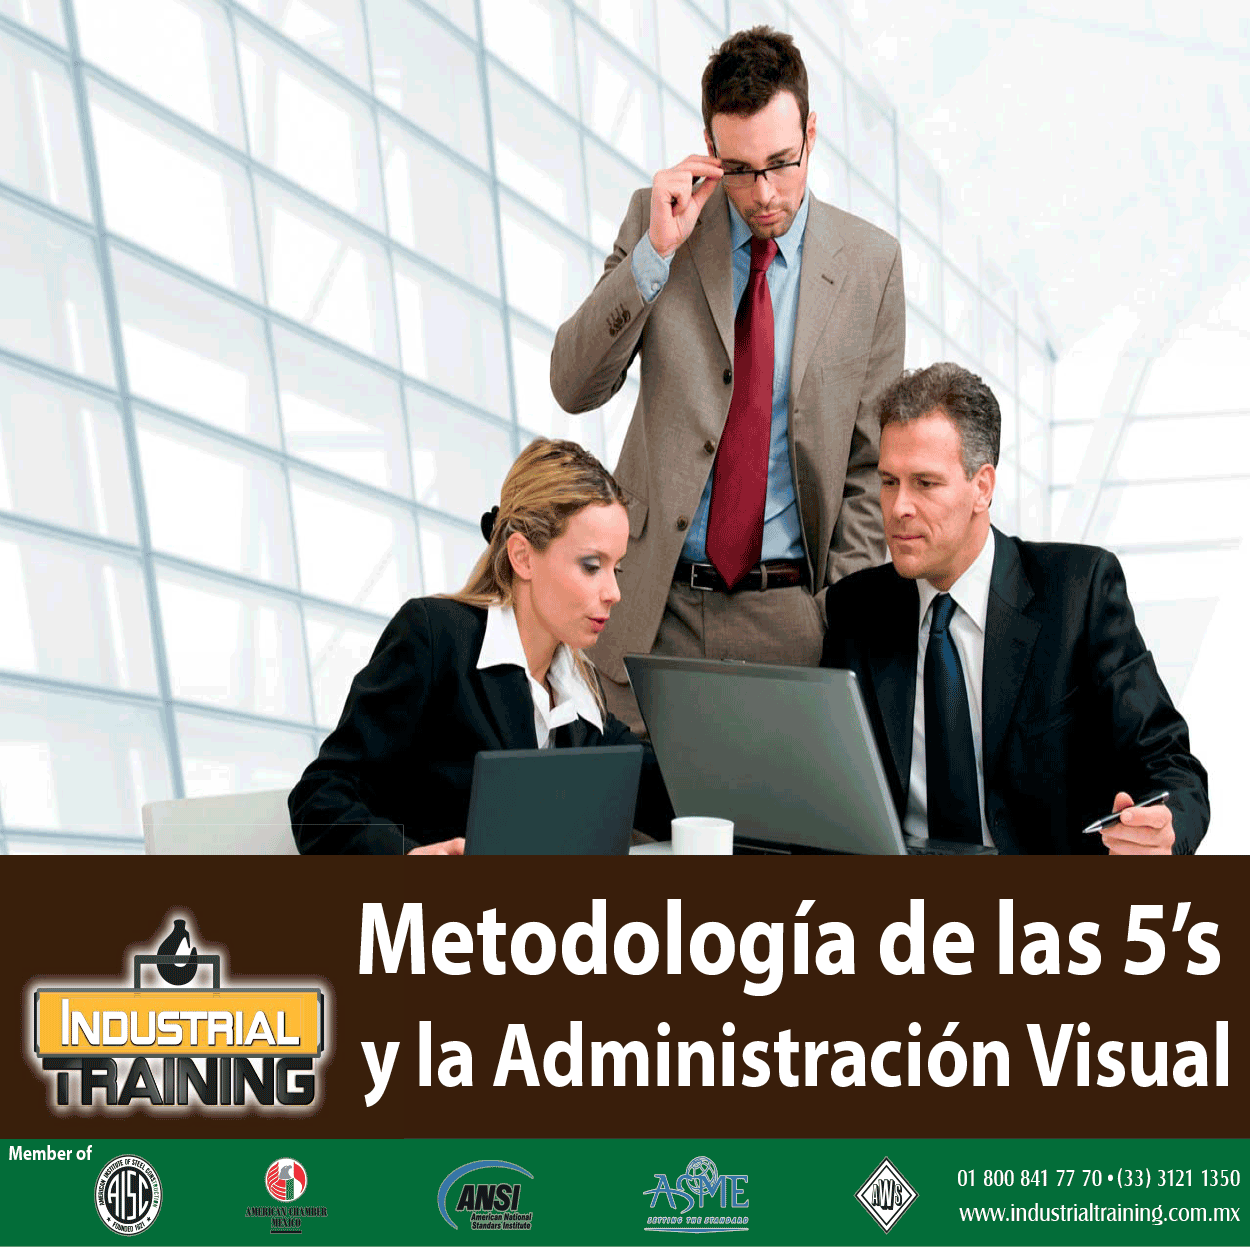 Metodologia de las 5'S y la Administracion Visual